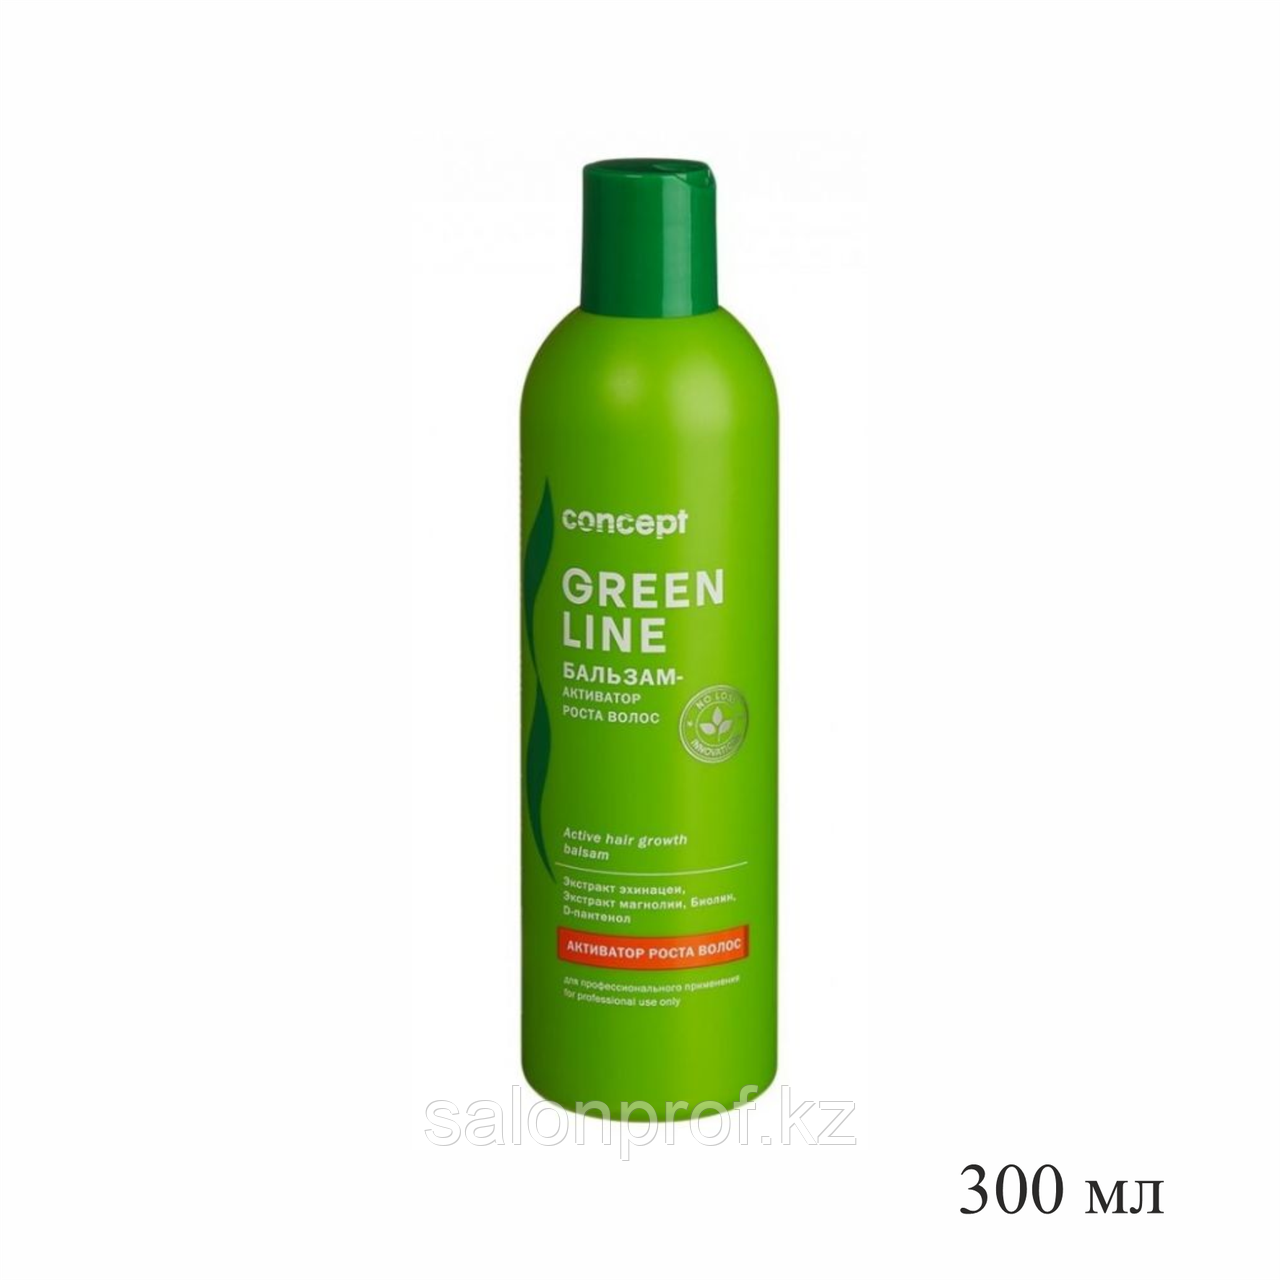 Бальзам CONCEPT Green Line активатор роста волос 300 мл №38175